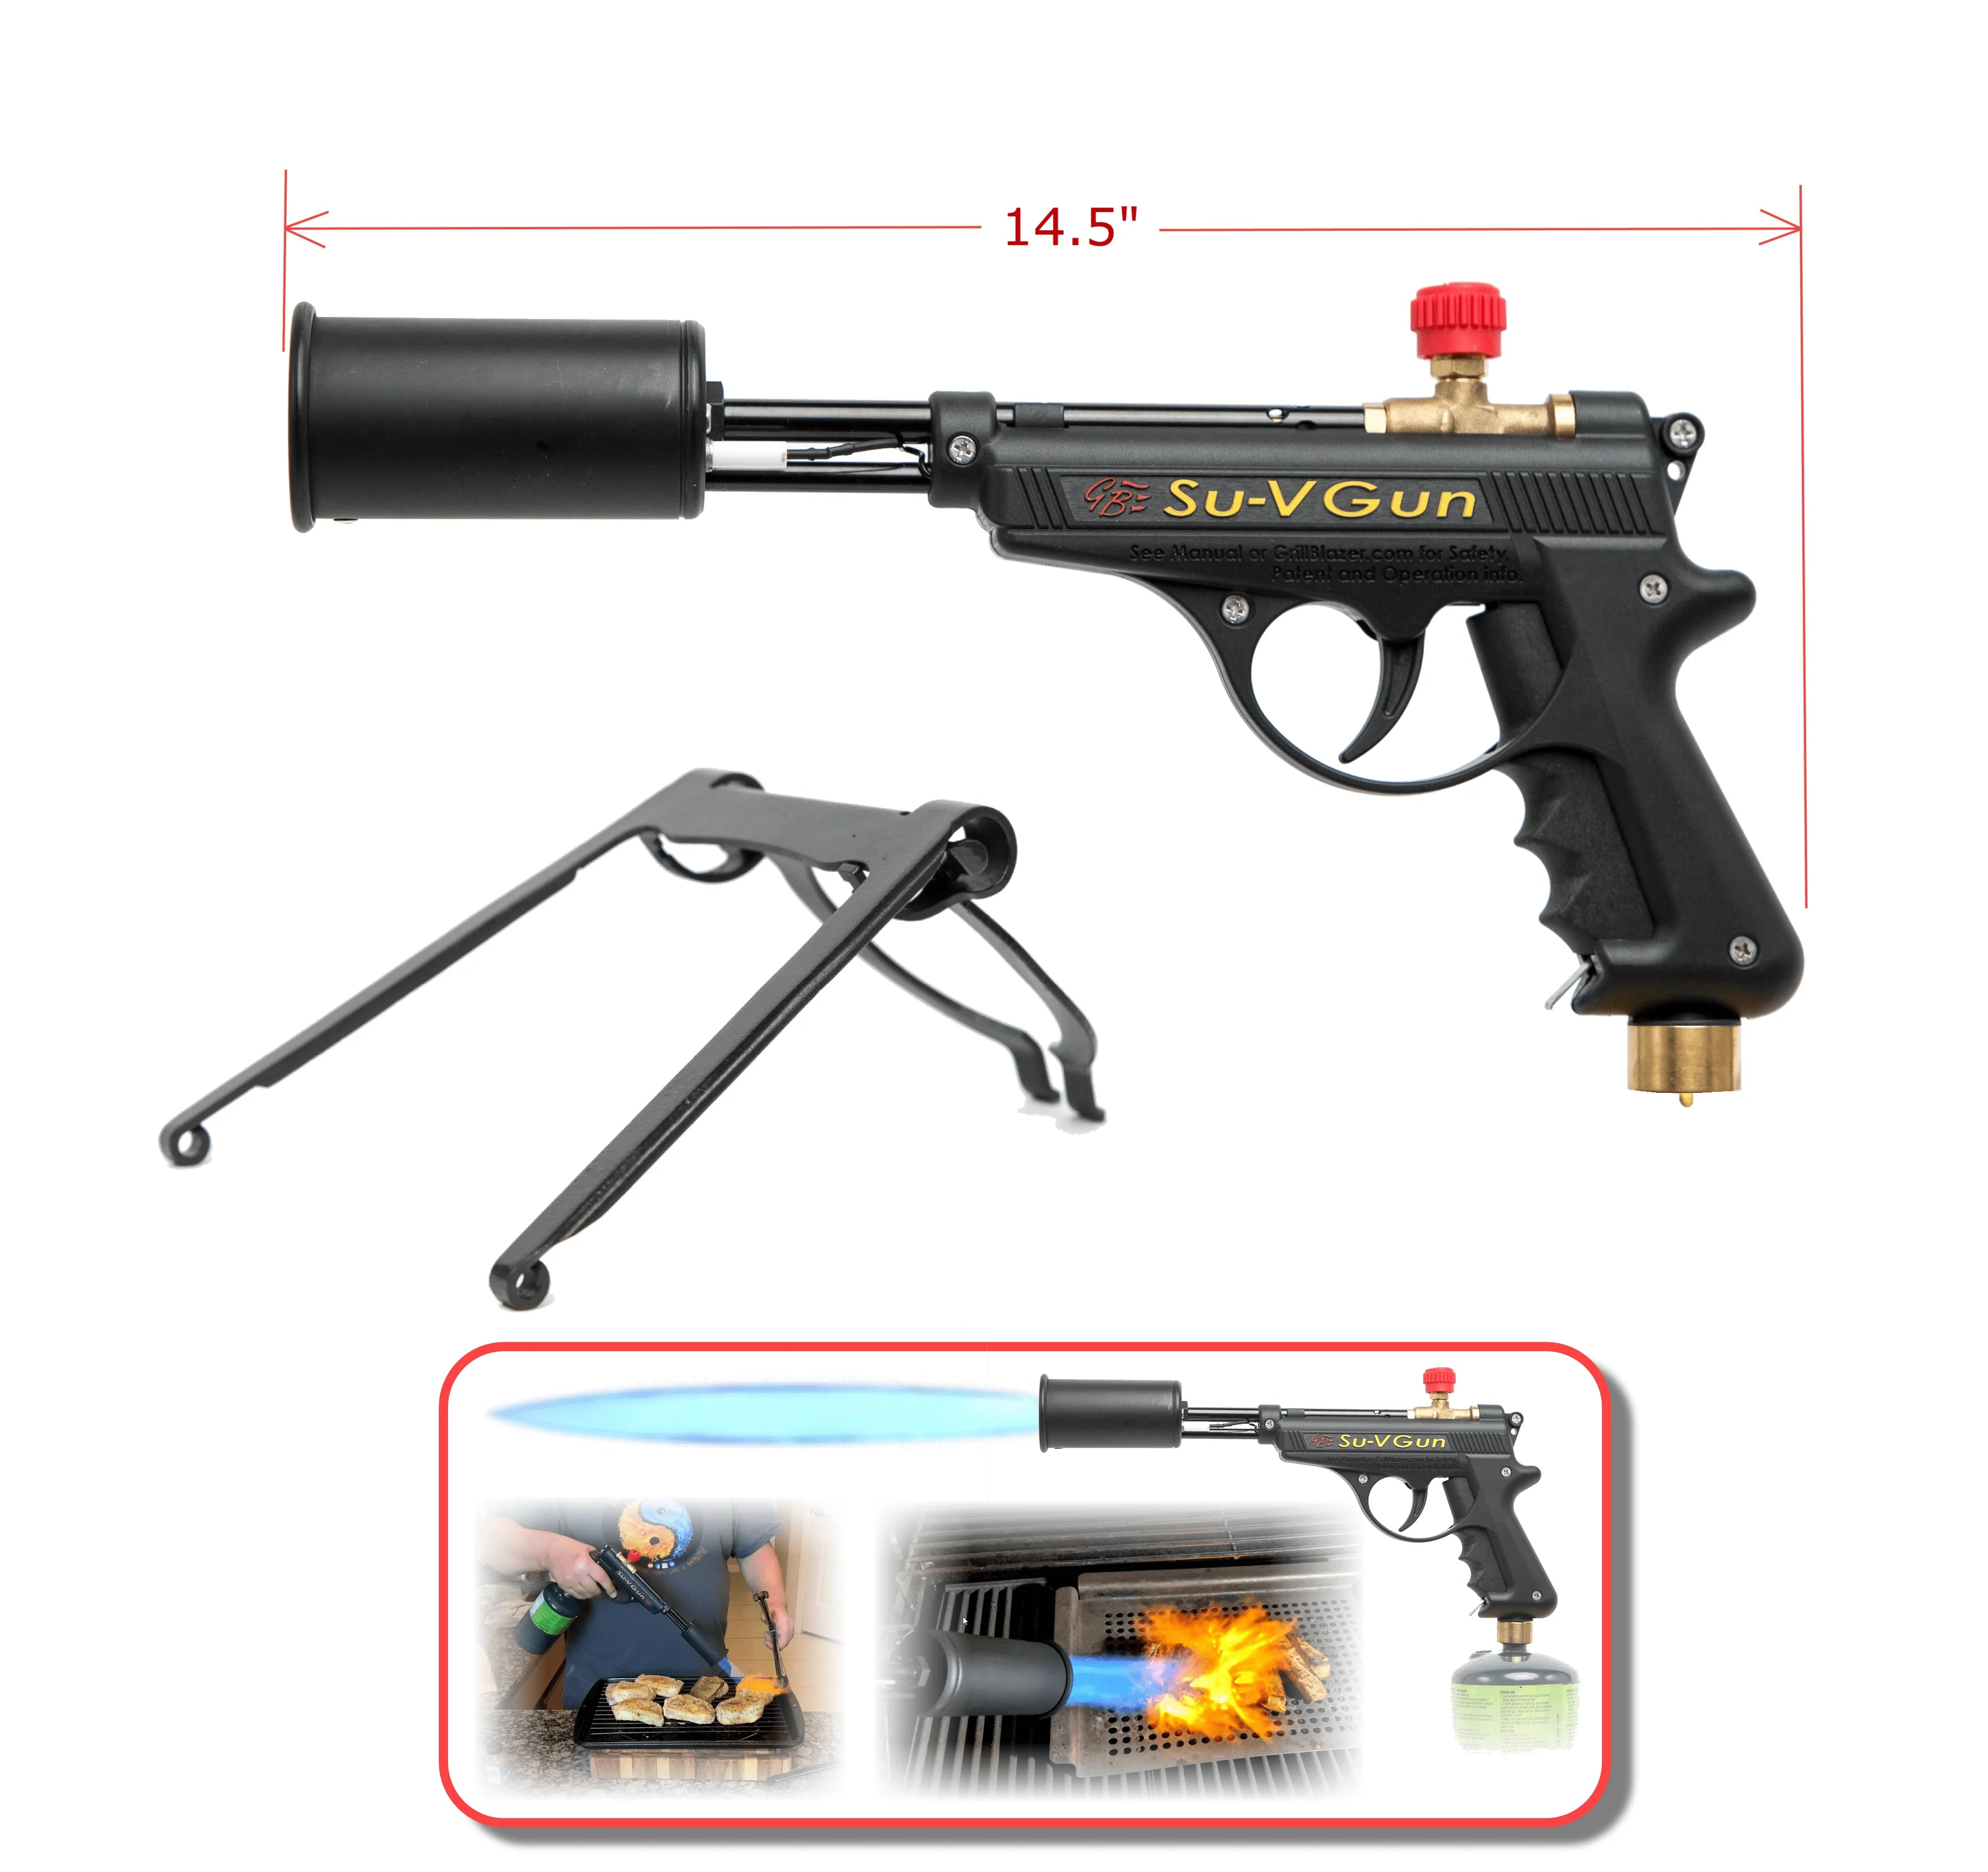 GrillBlazer Su-V Gun